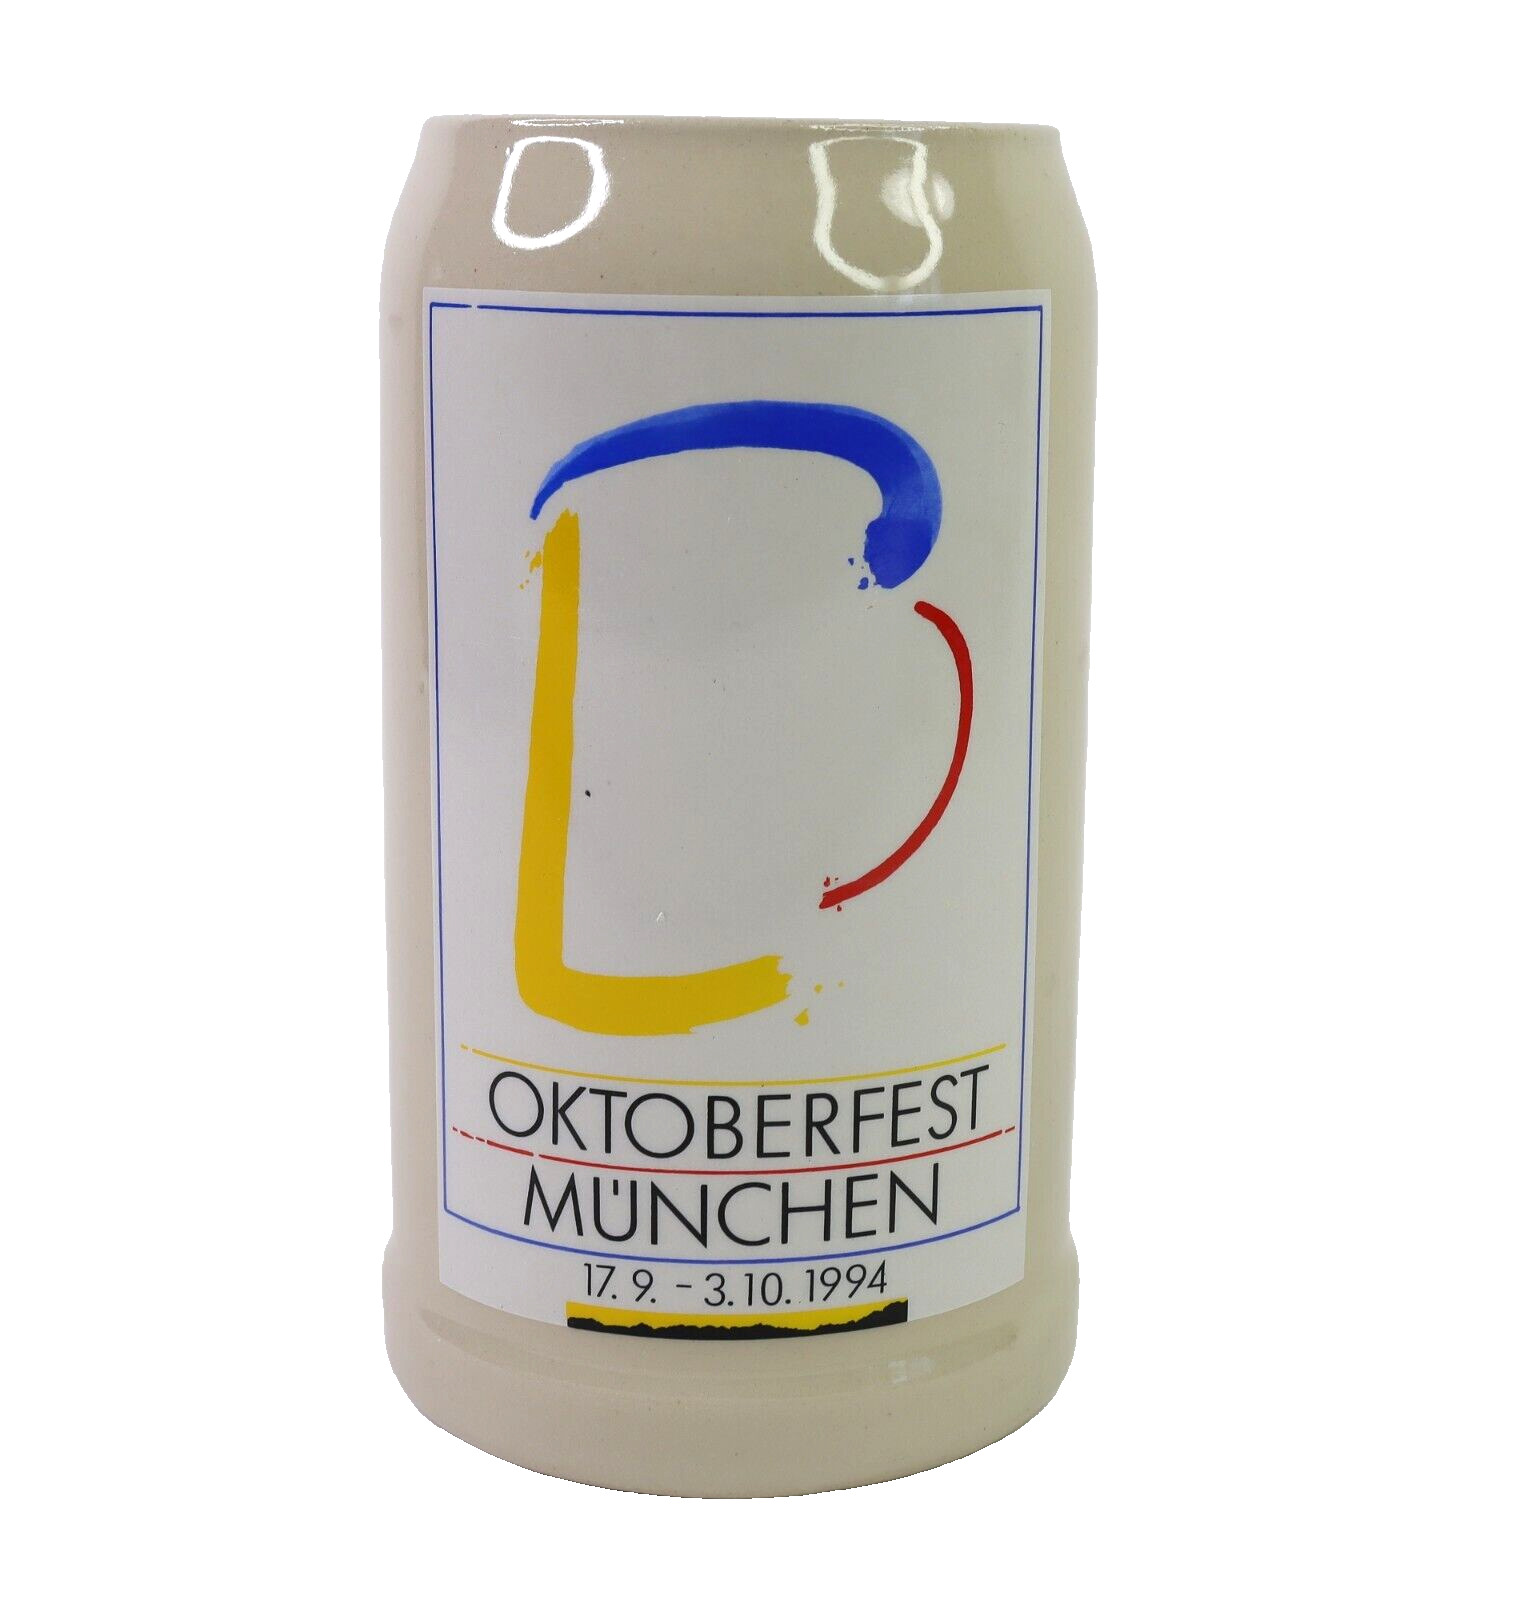 Official 1994 Oktoberfest Munich German Bavarian Beer Stein 1 Liter Collectible